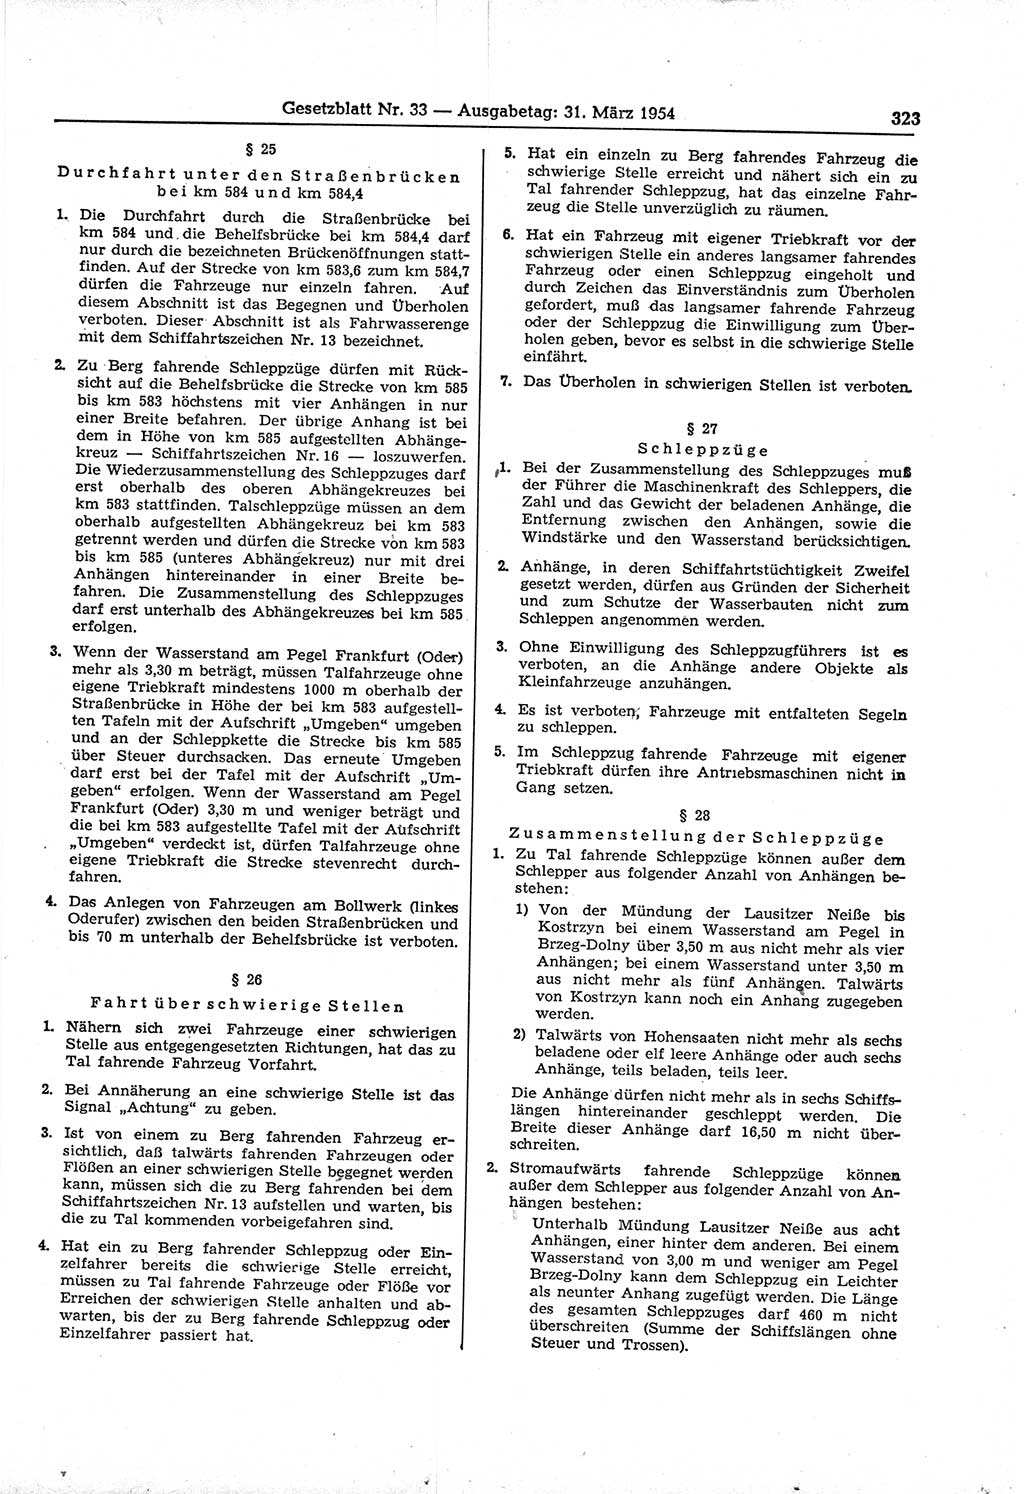 Gesetzblatt (GBl.) der Deutschen Demokratischen Republik (DDR) 1954, Seite 323 (GBl. DDR 1954, S. 323)